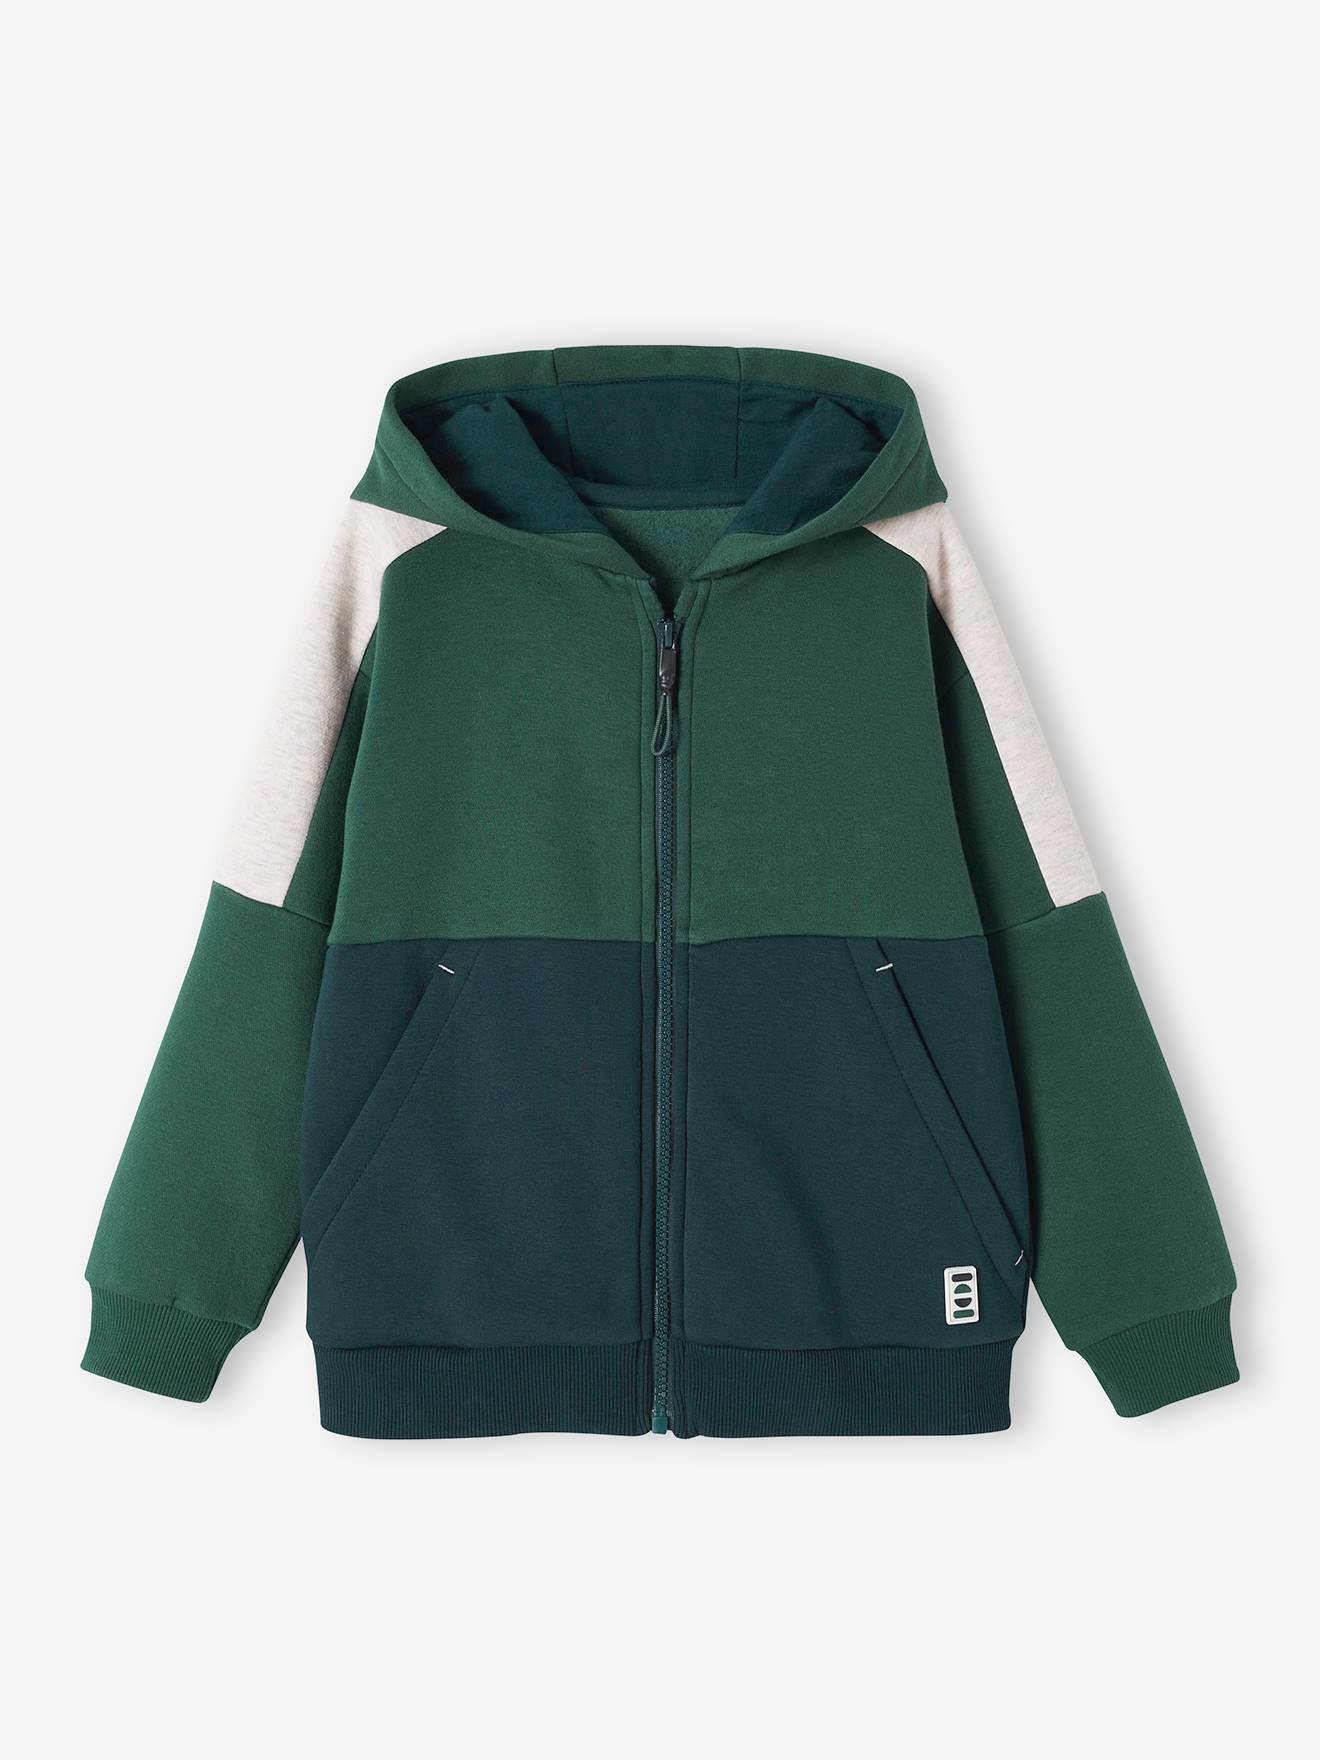 Sports Jacket with Zip & Hood, Colourblock Effect, for Boys fir green